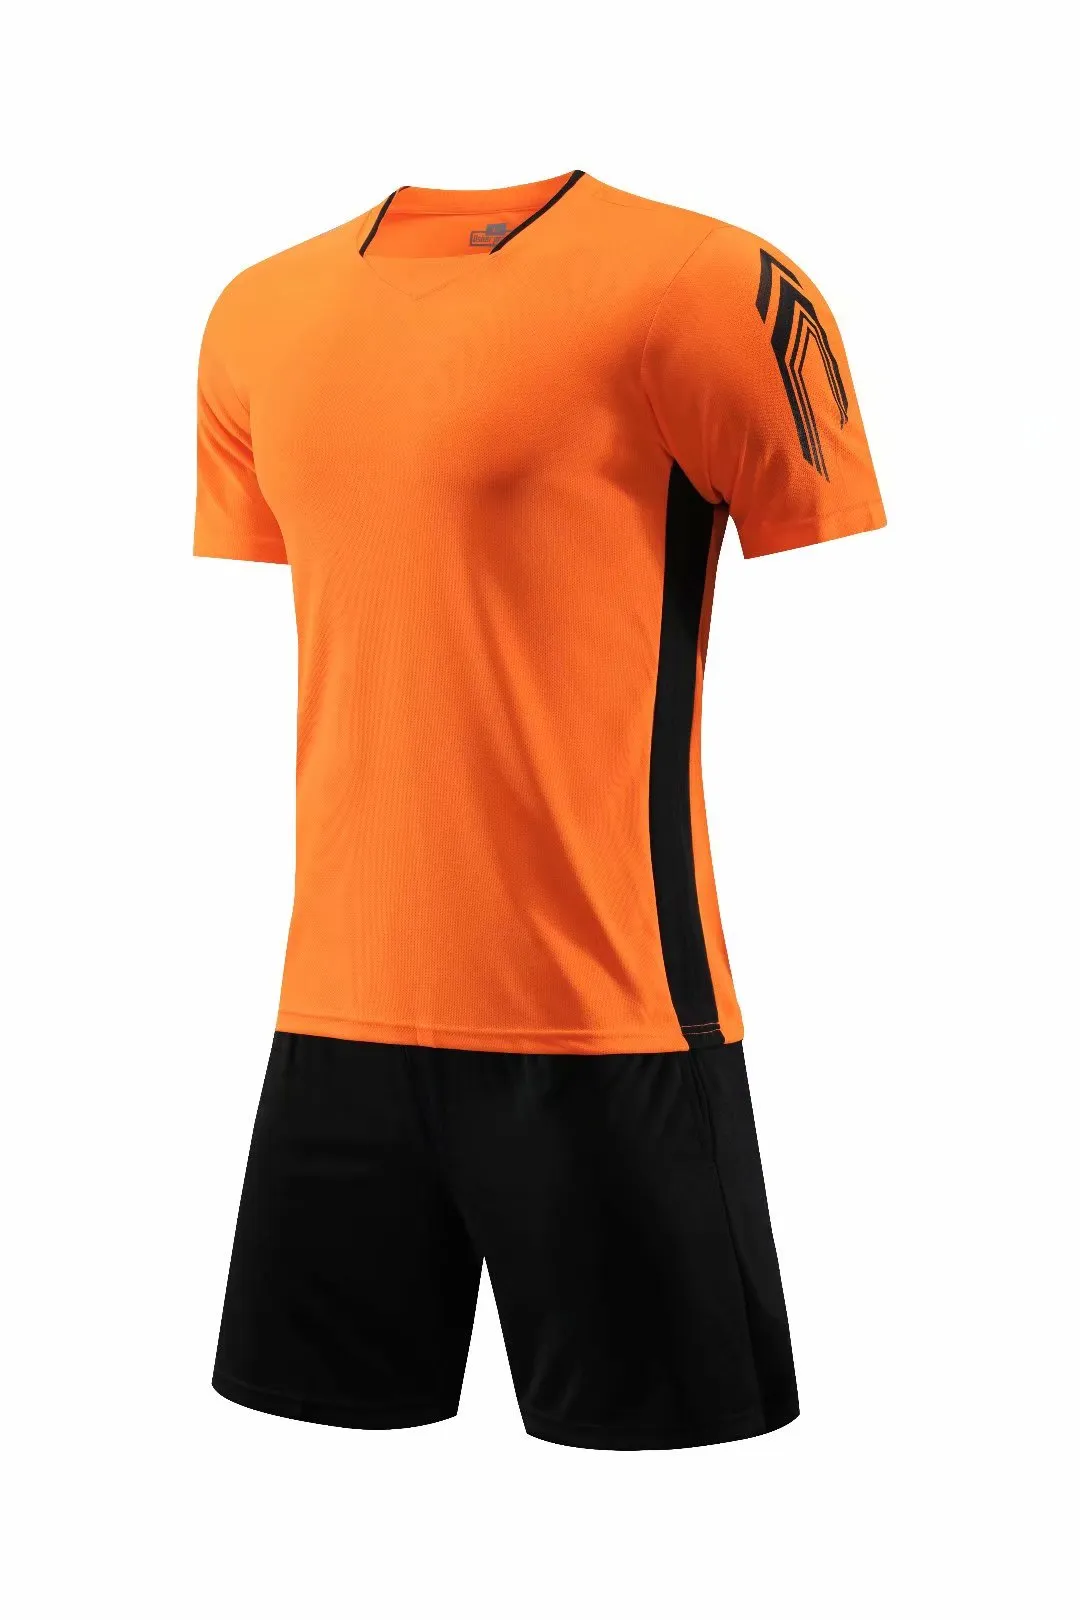 オレンジ色の子供の子供たちのサッカージャージセット男性屋外フットボールキットユニフォームフットボールトレーニングシャツショートスーツ